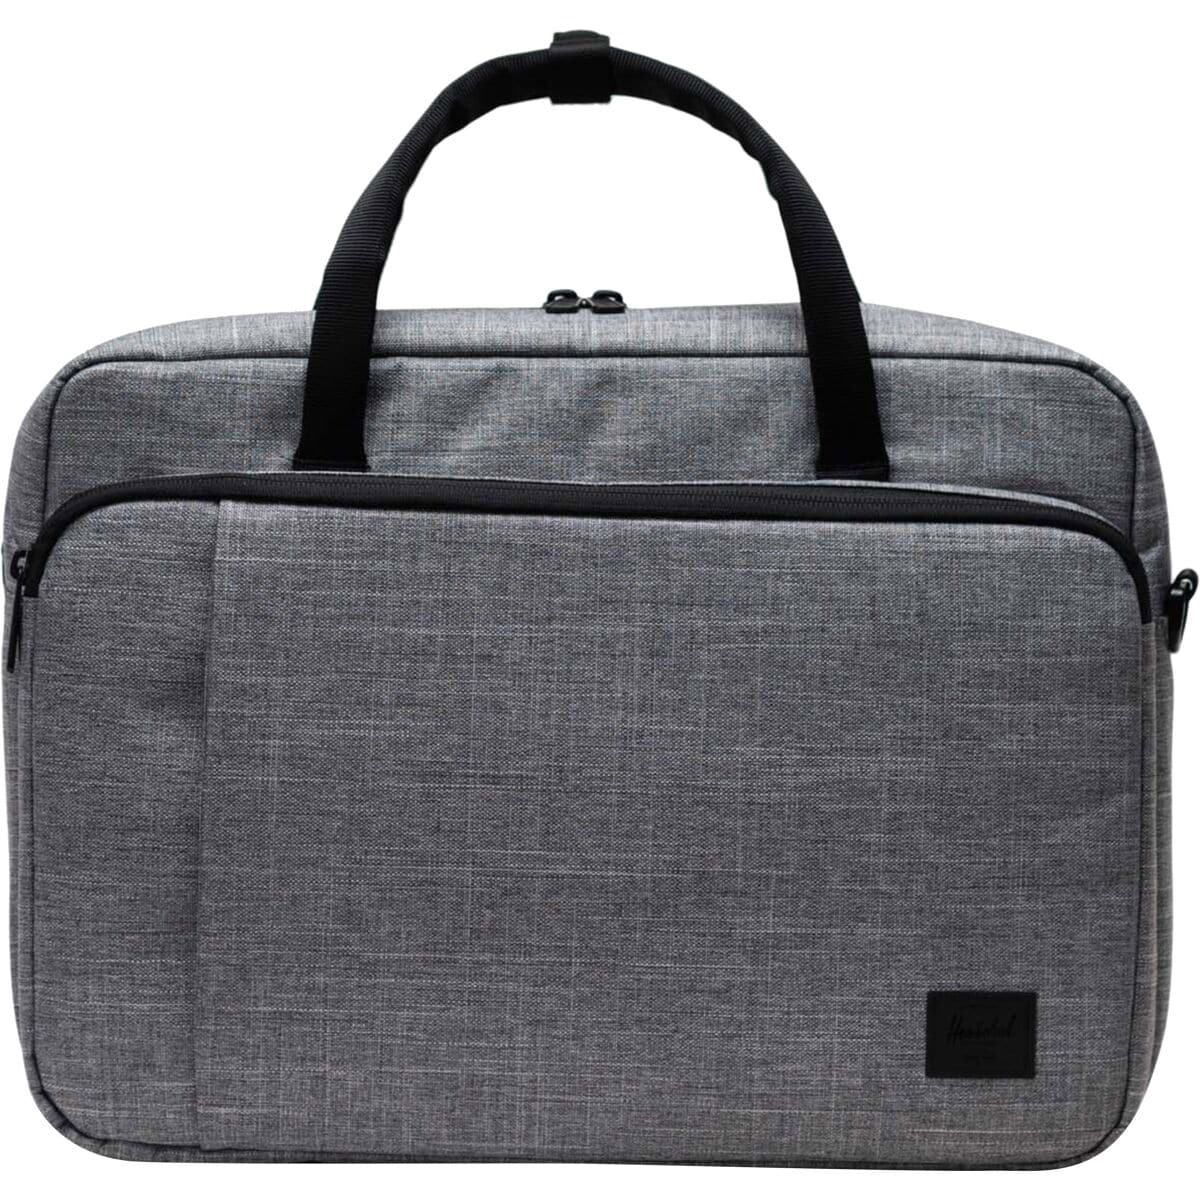 Herschel Supply Co. Columbia Messenger Bag